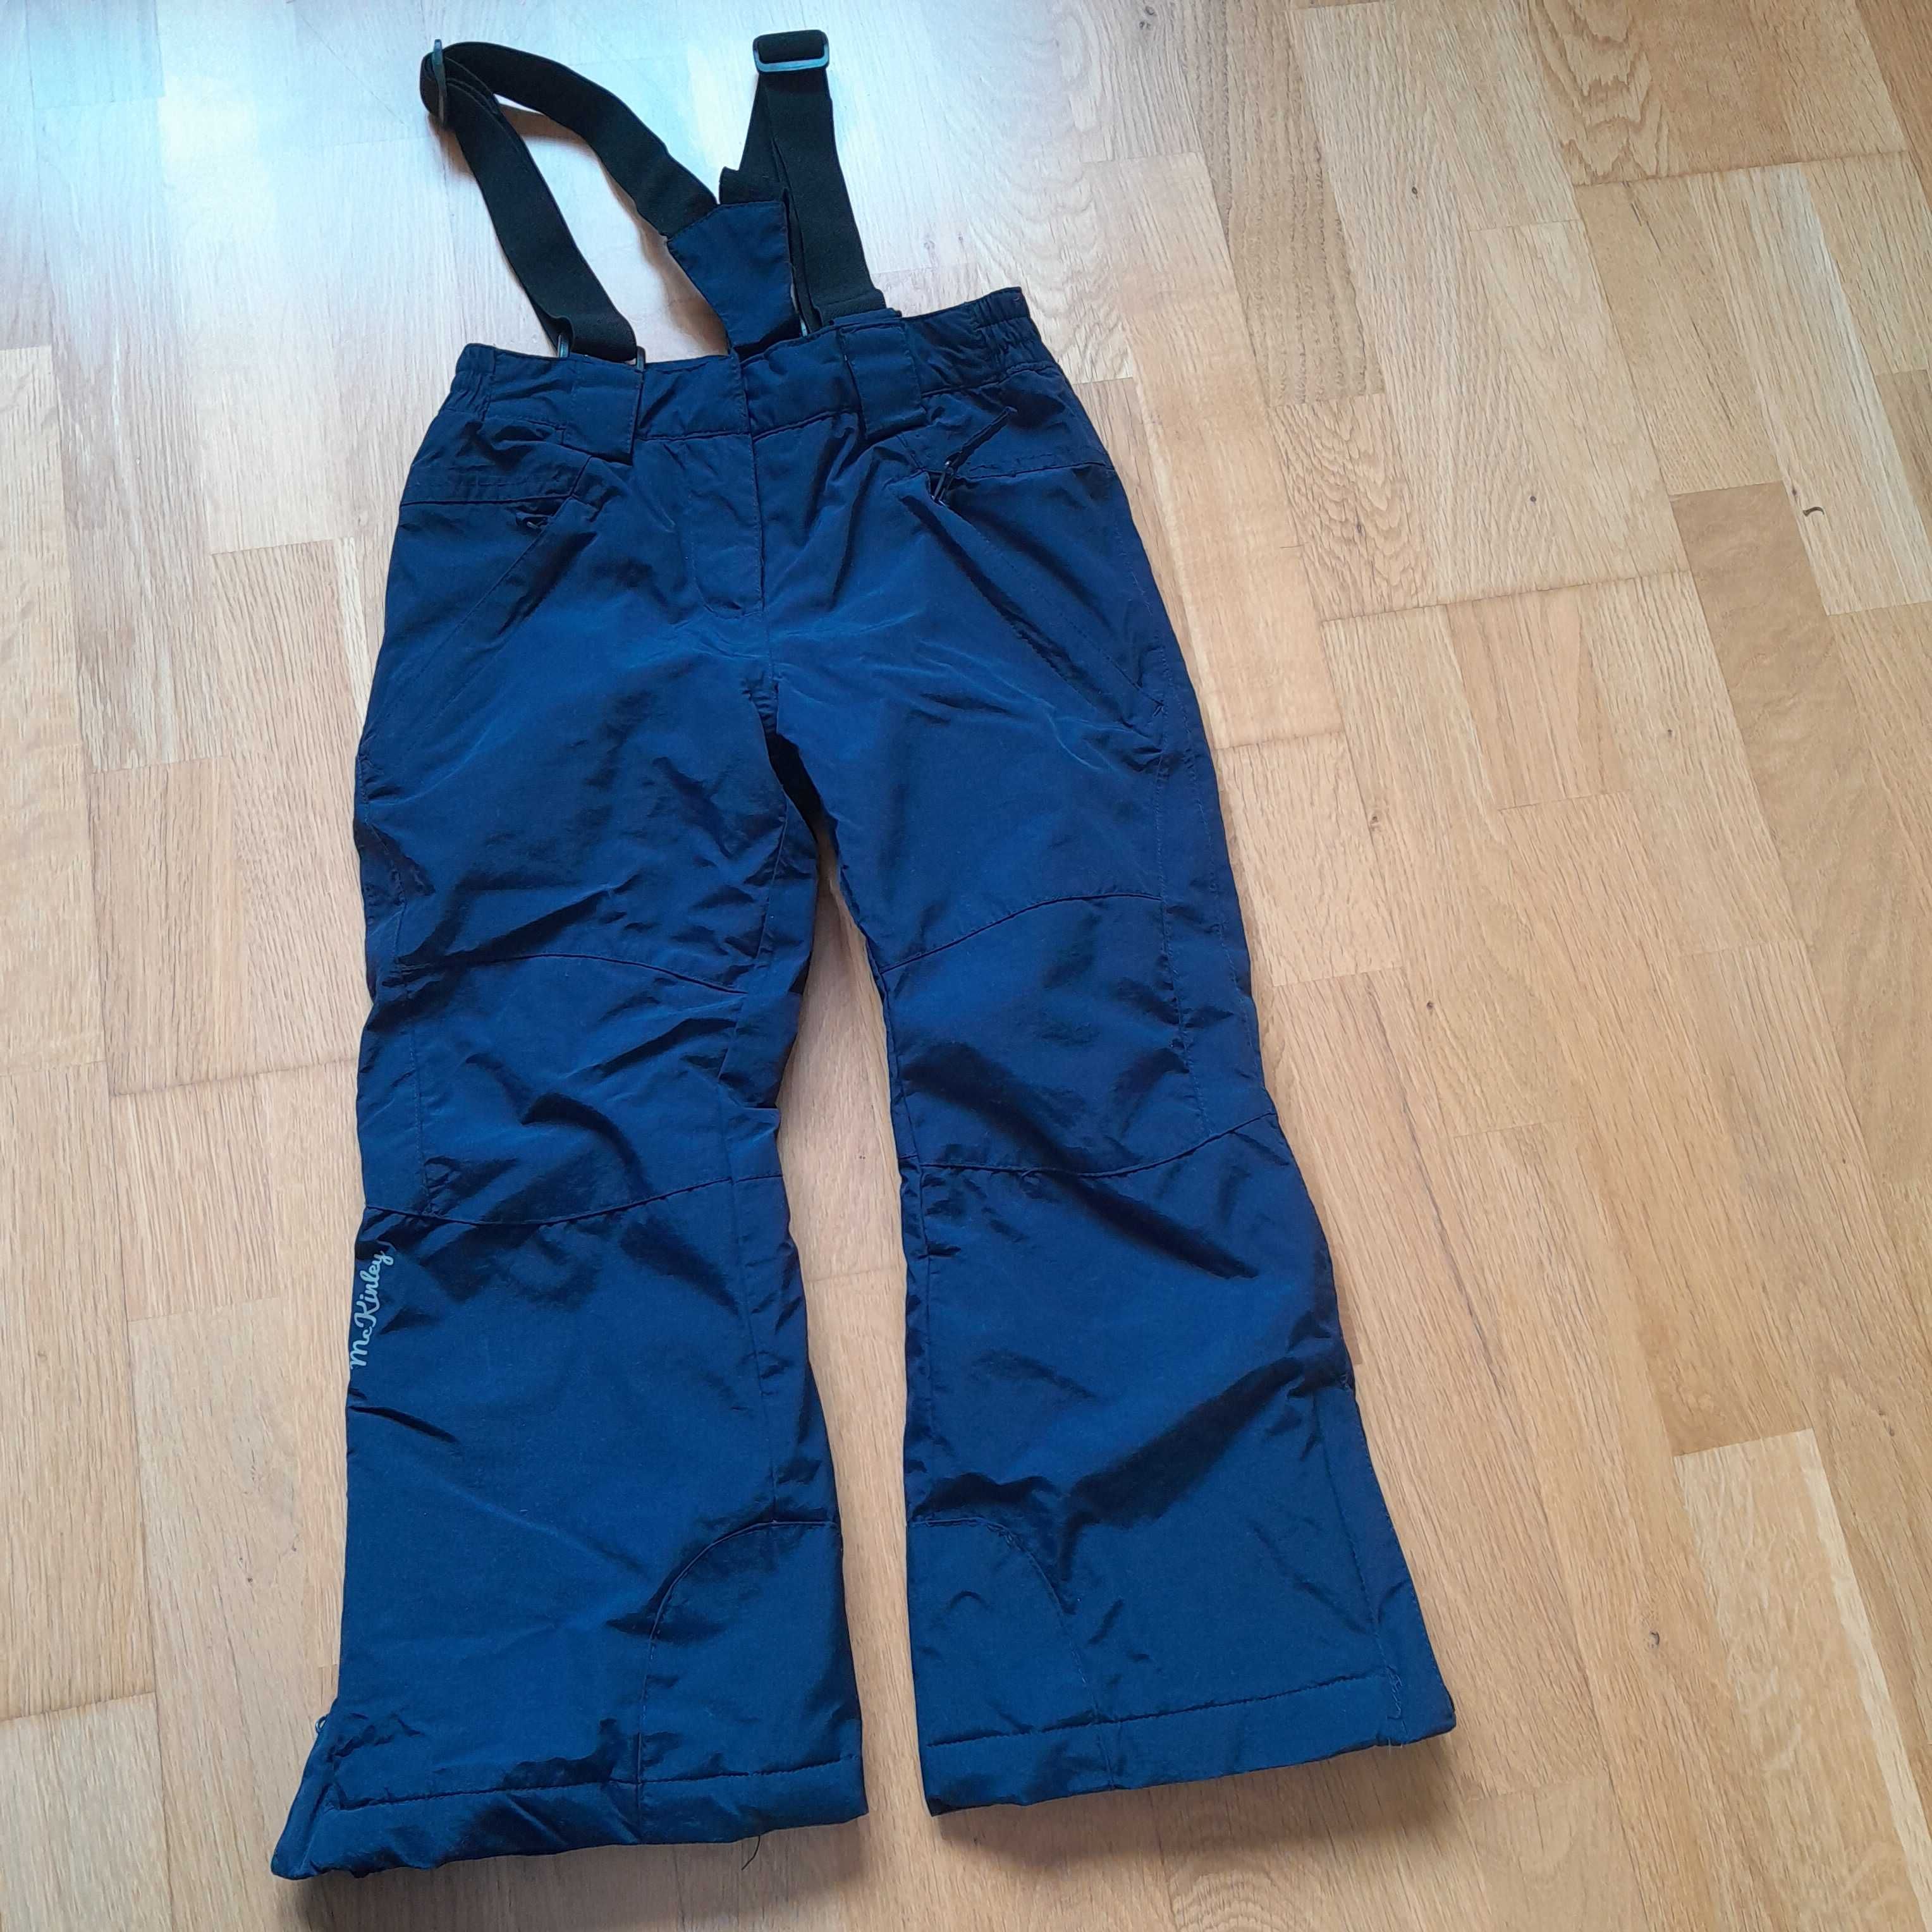 Spodnie narciarskie firmy Mc kinley , rozmiar 116